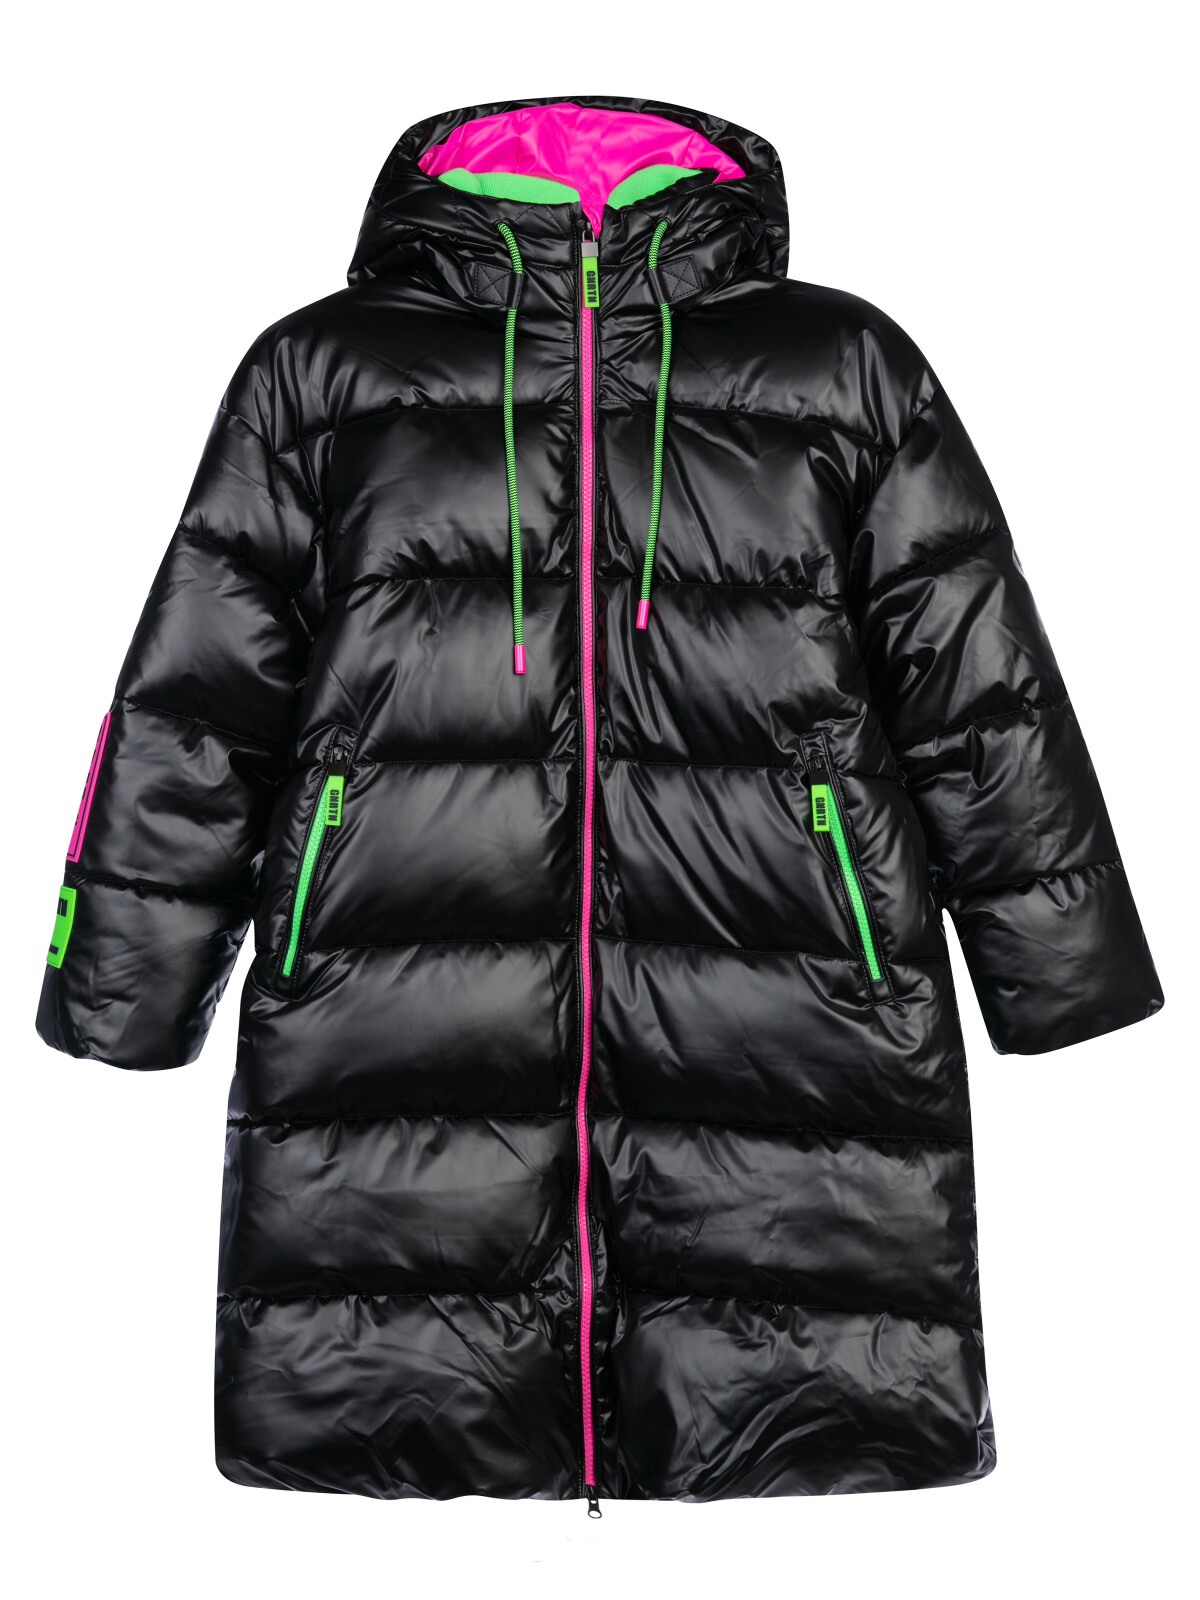 Пальто текстильное с полиуретановым покрытием для девочек PlayToday, черный,цветной, 170